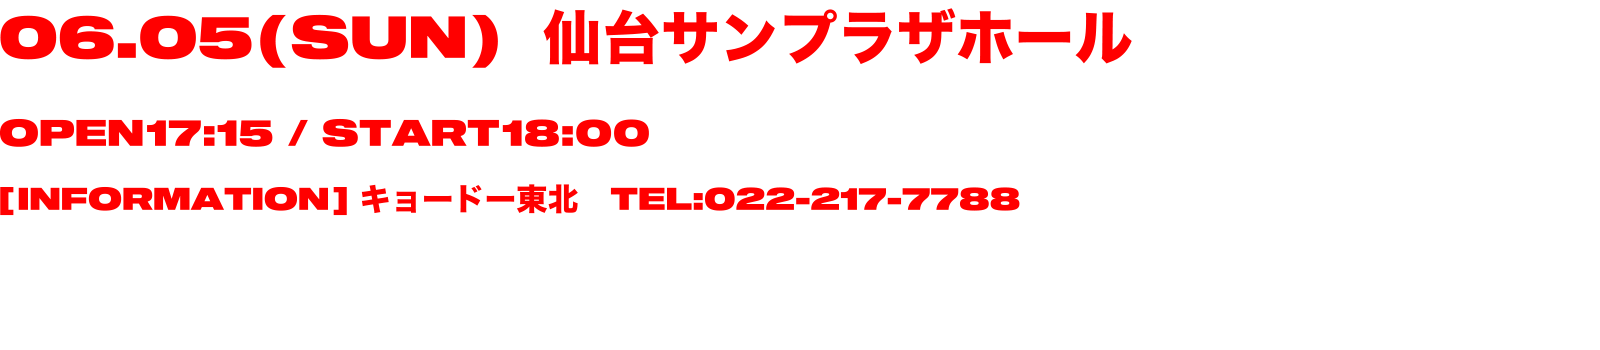 06.05(SUN)仙台サンプラザホール OPEN 17:15/START 18:00 [INFORMATION] キョードー東北 TEL:022-217-7788